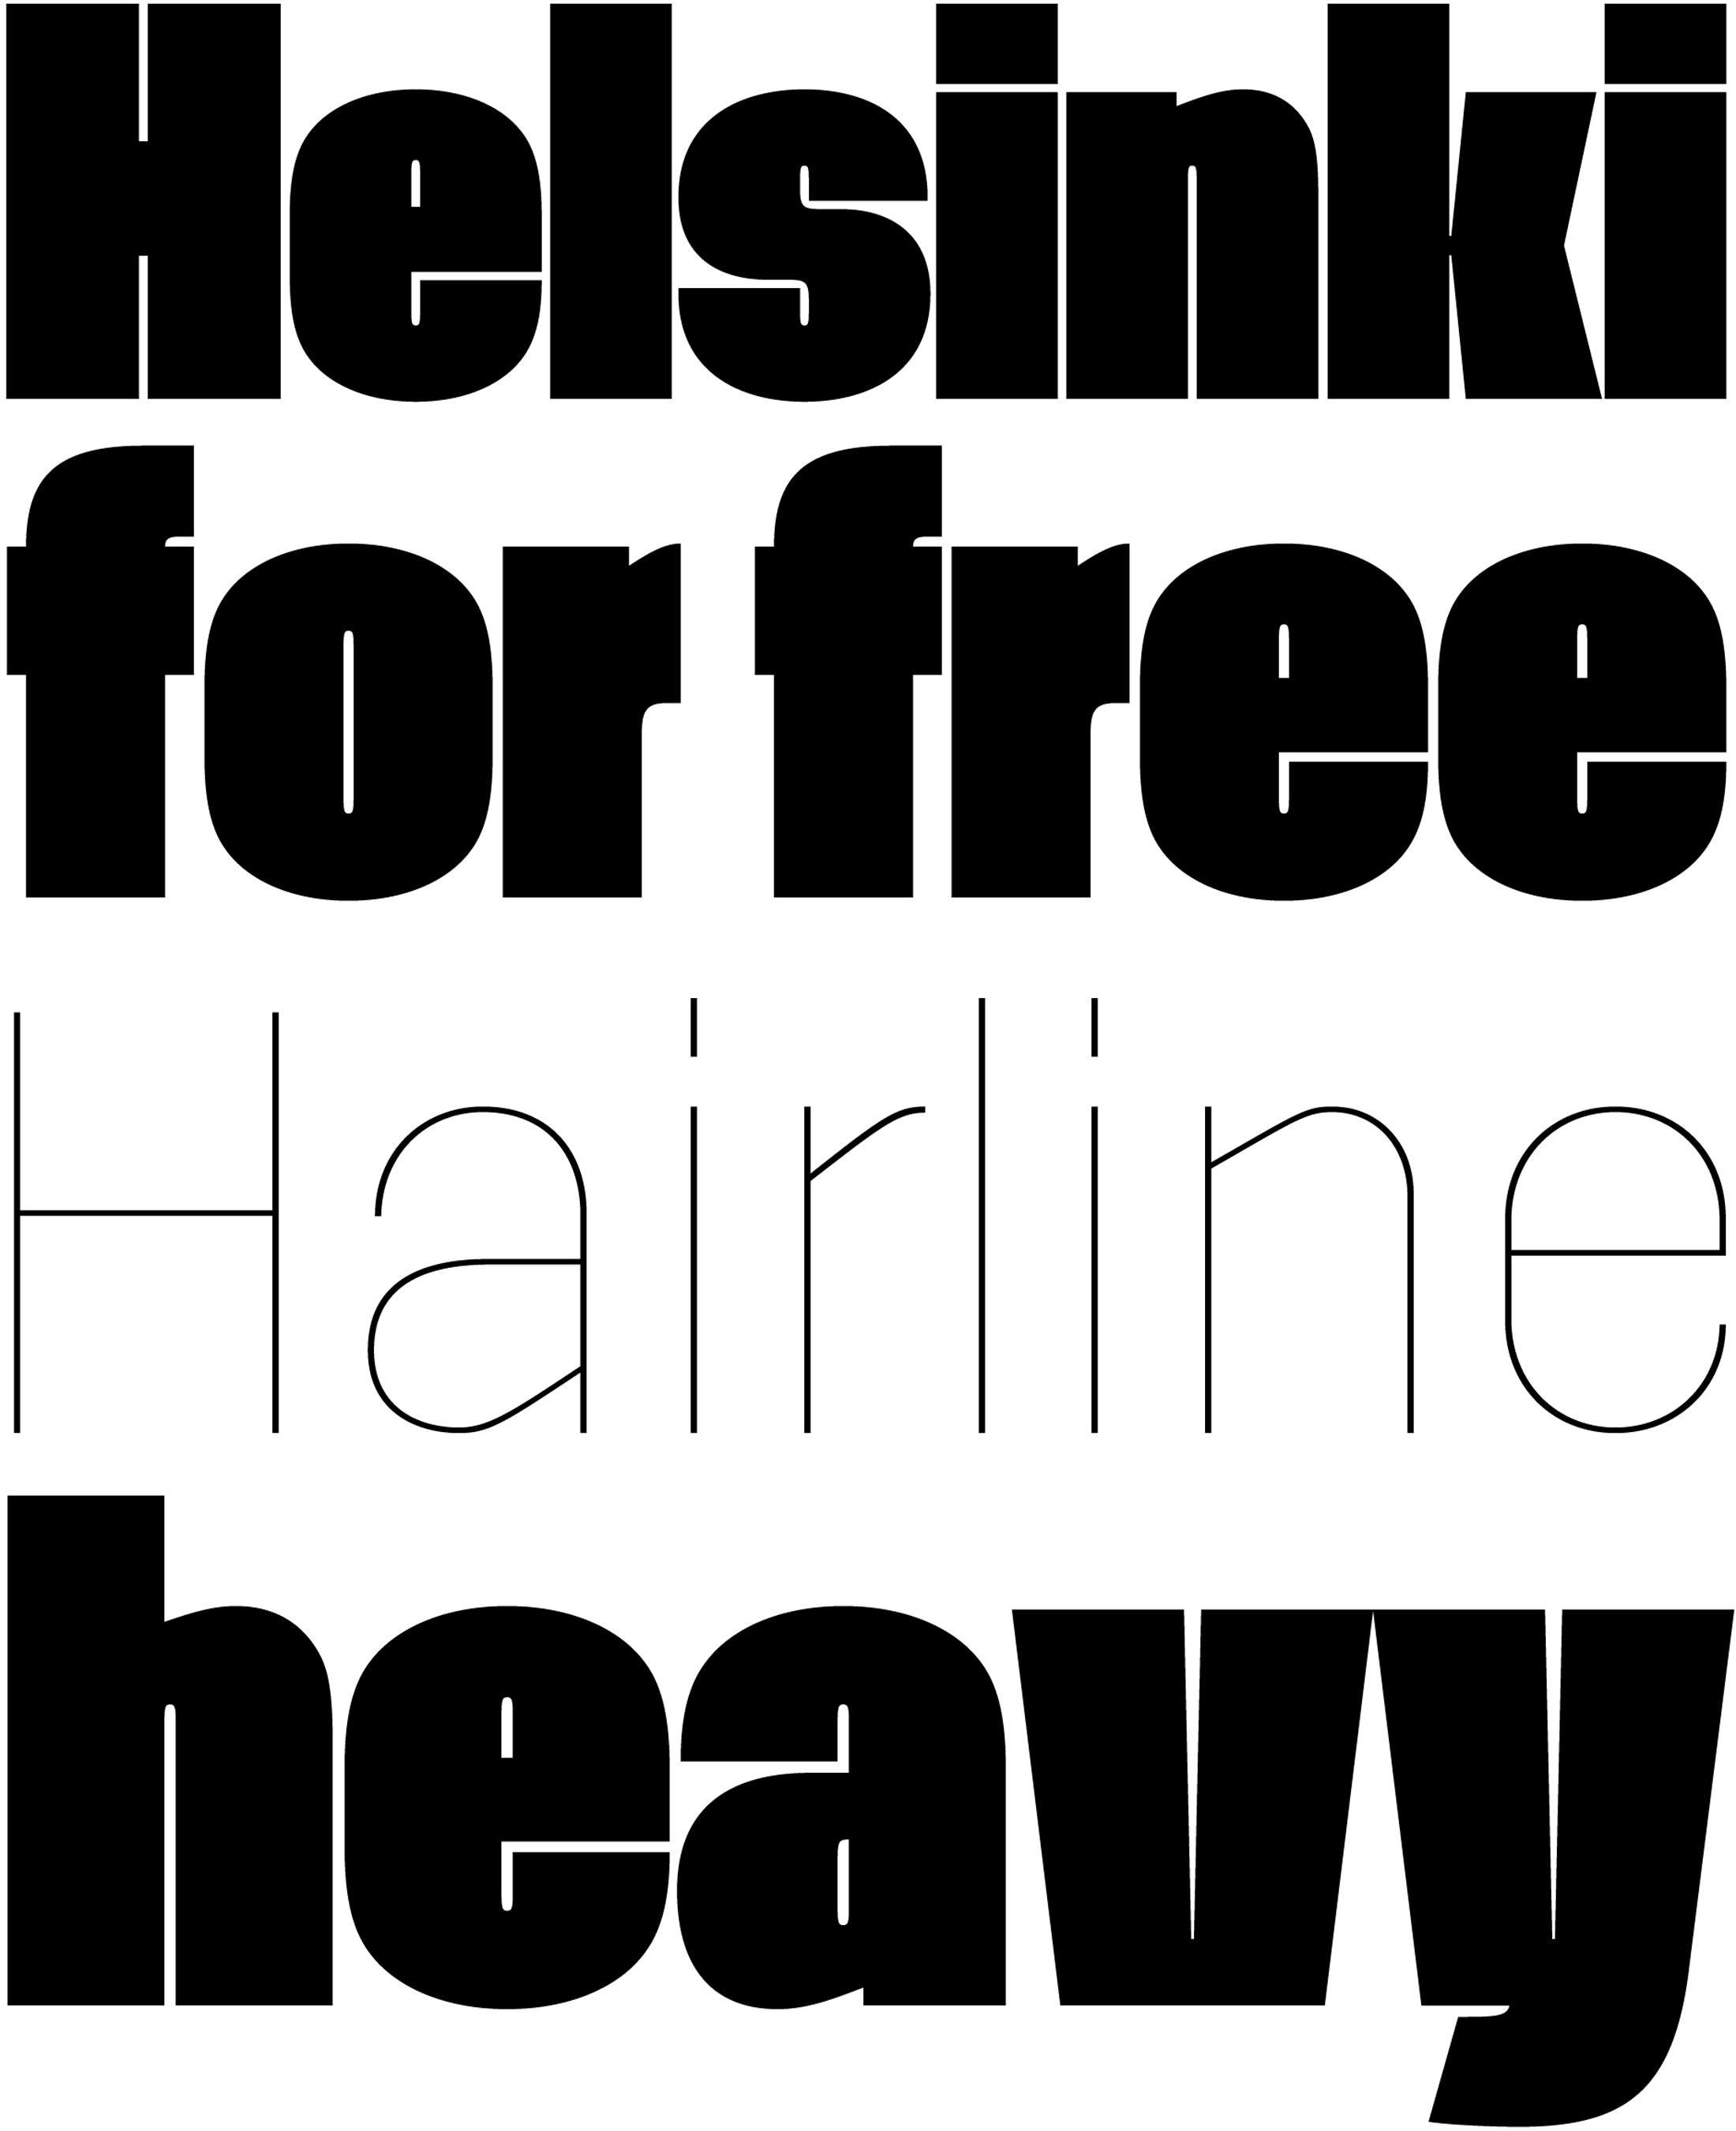 Una fuente sans serif de estilo europeo retro disponible en grueso y fino.  Fuentes retro y vintage gratuitas: Helsinki